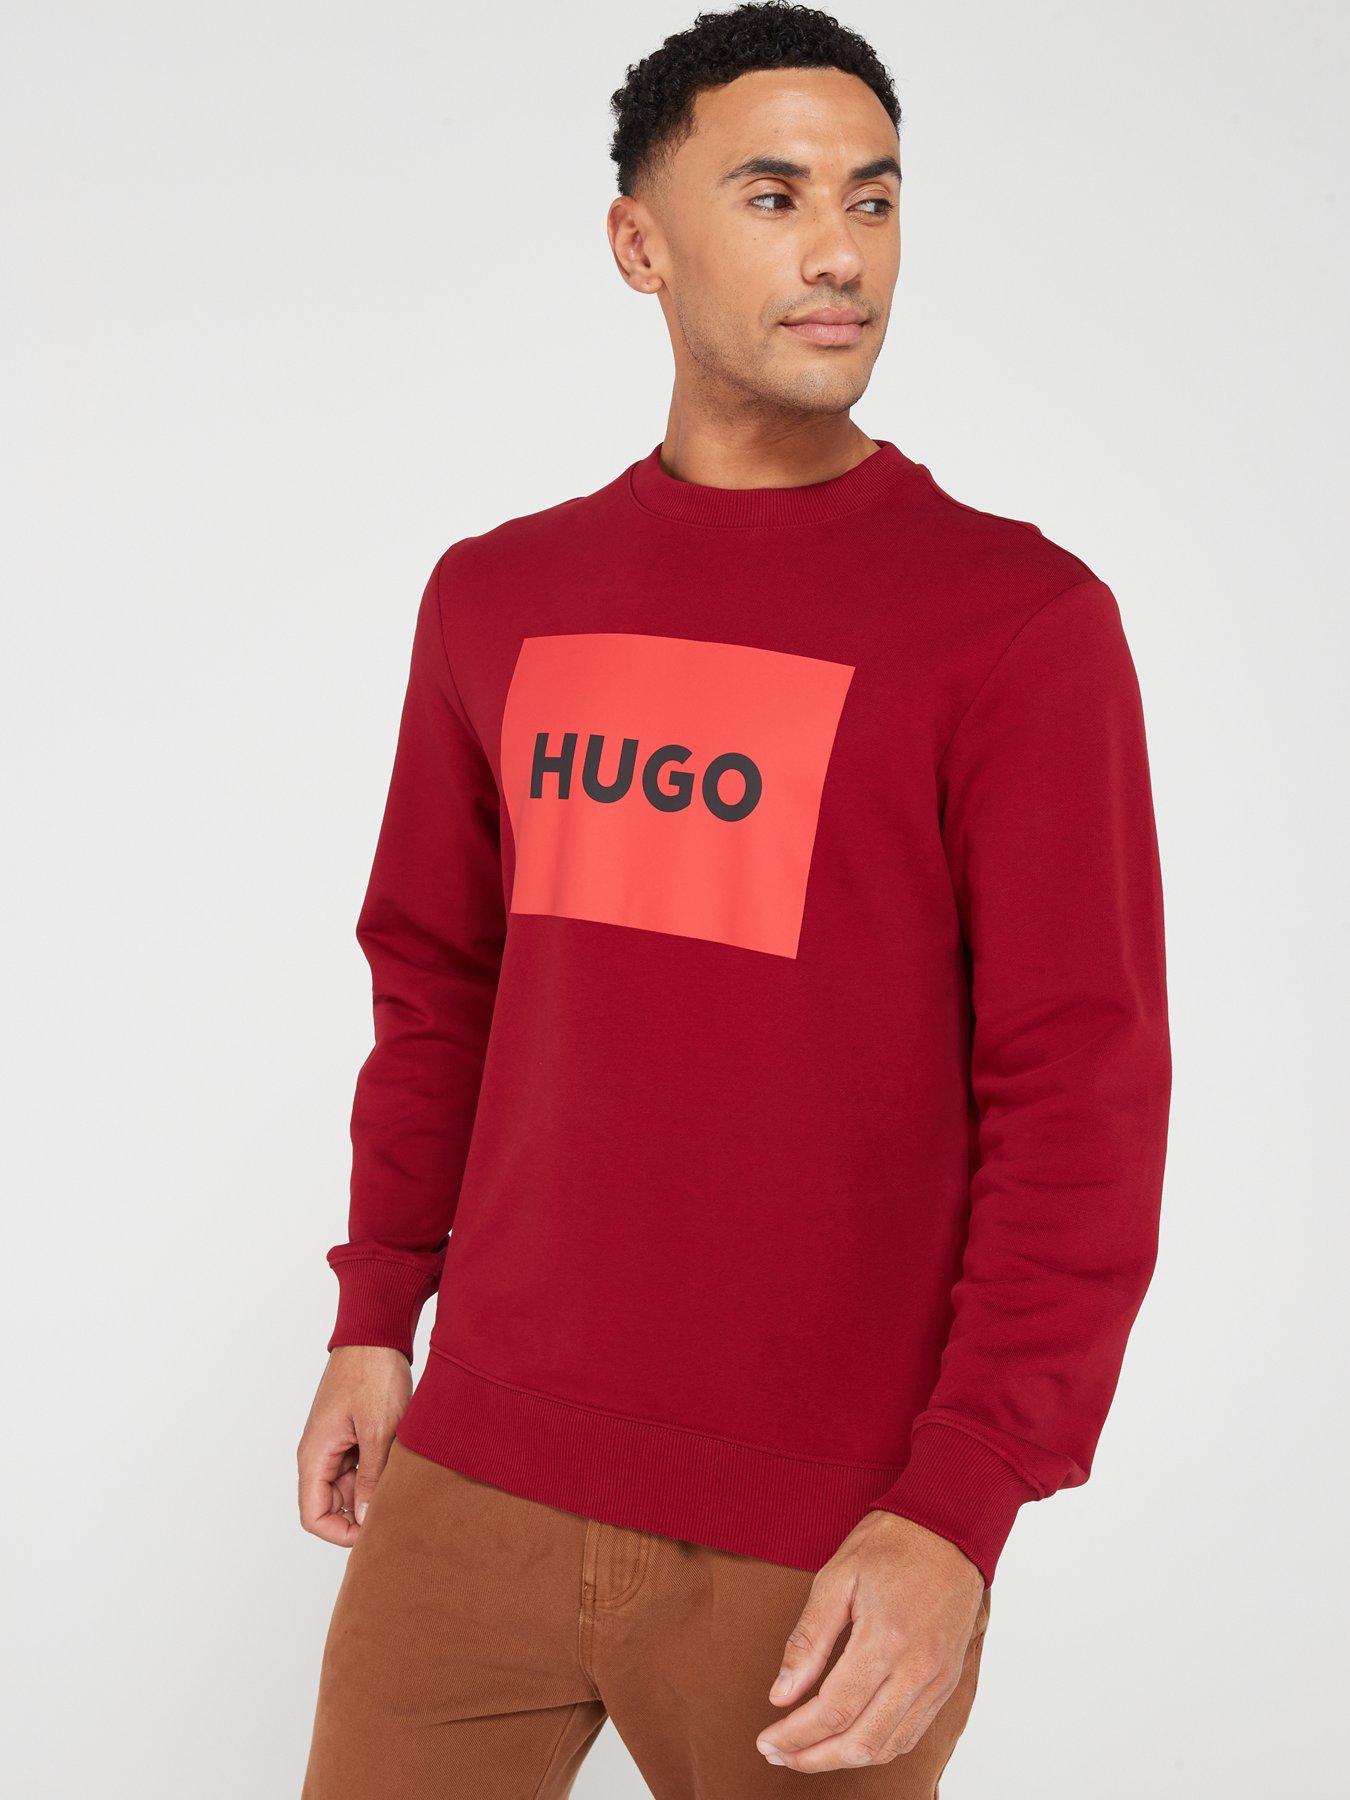 HUGO - Zip-up hoodie with flock-print stacked logos